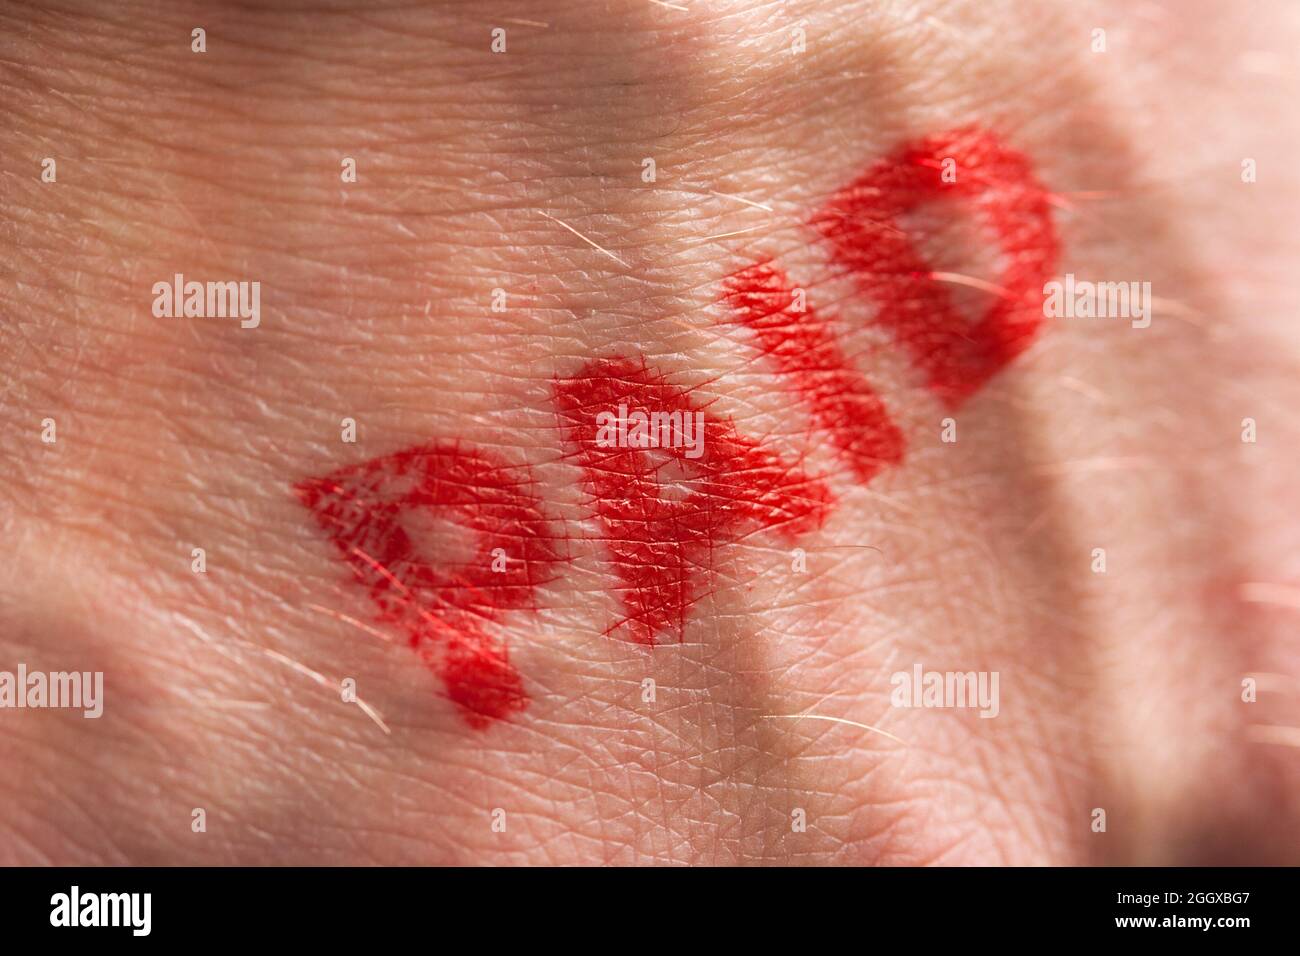 Roter Tintenstempel mit dem Wort, das auf dem Handrücken bezahlt wird Stockfoto